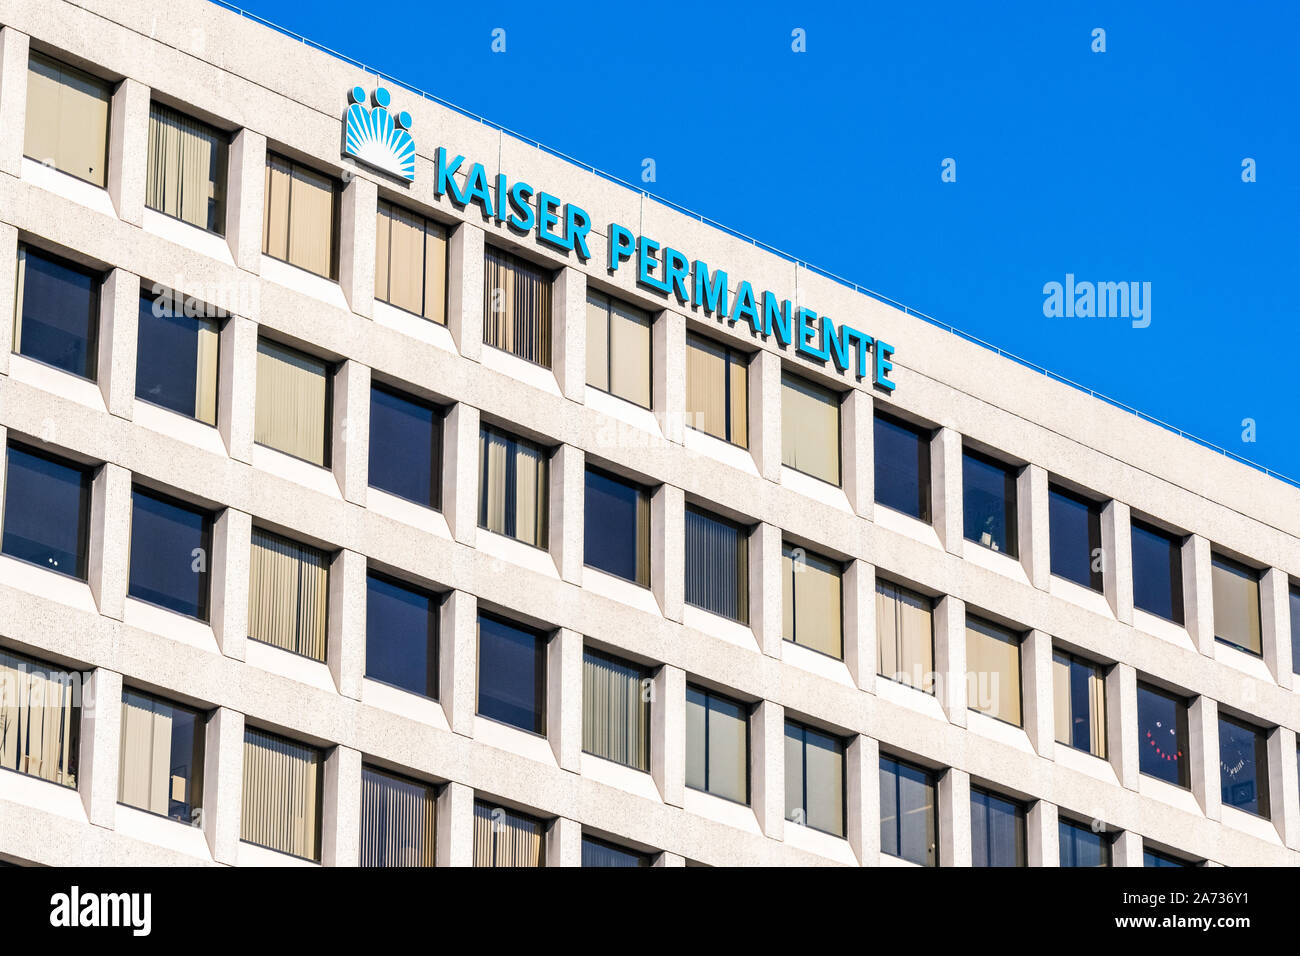 Oct 18, 2019 Oakland / CA / STATI UNITI D'AMERICA - Kaiser Permanente Medical Center di East Bay Area di San Francisco; Kaiser Permanente è un Americano gestito integrato Foto Stock